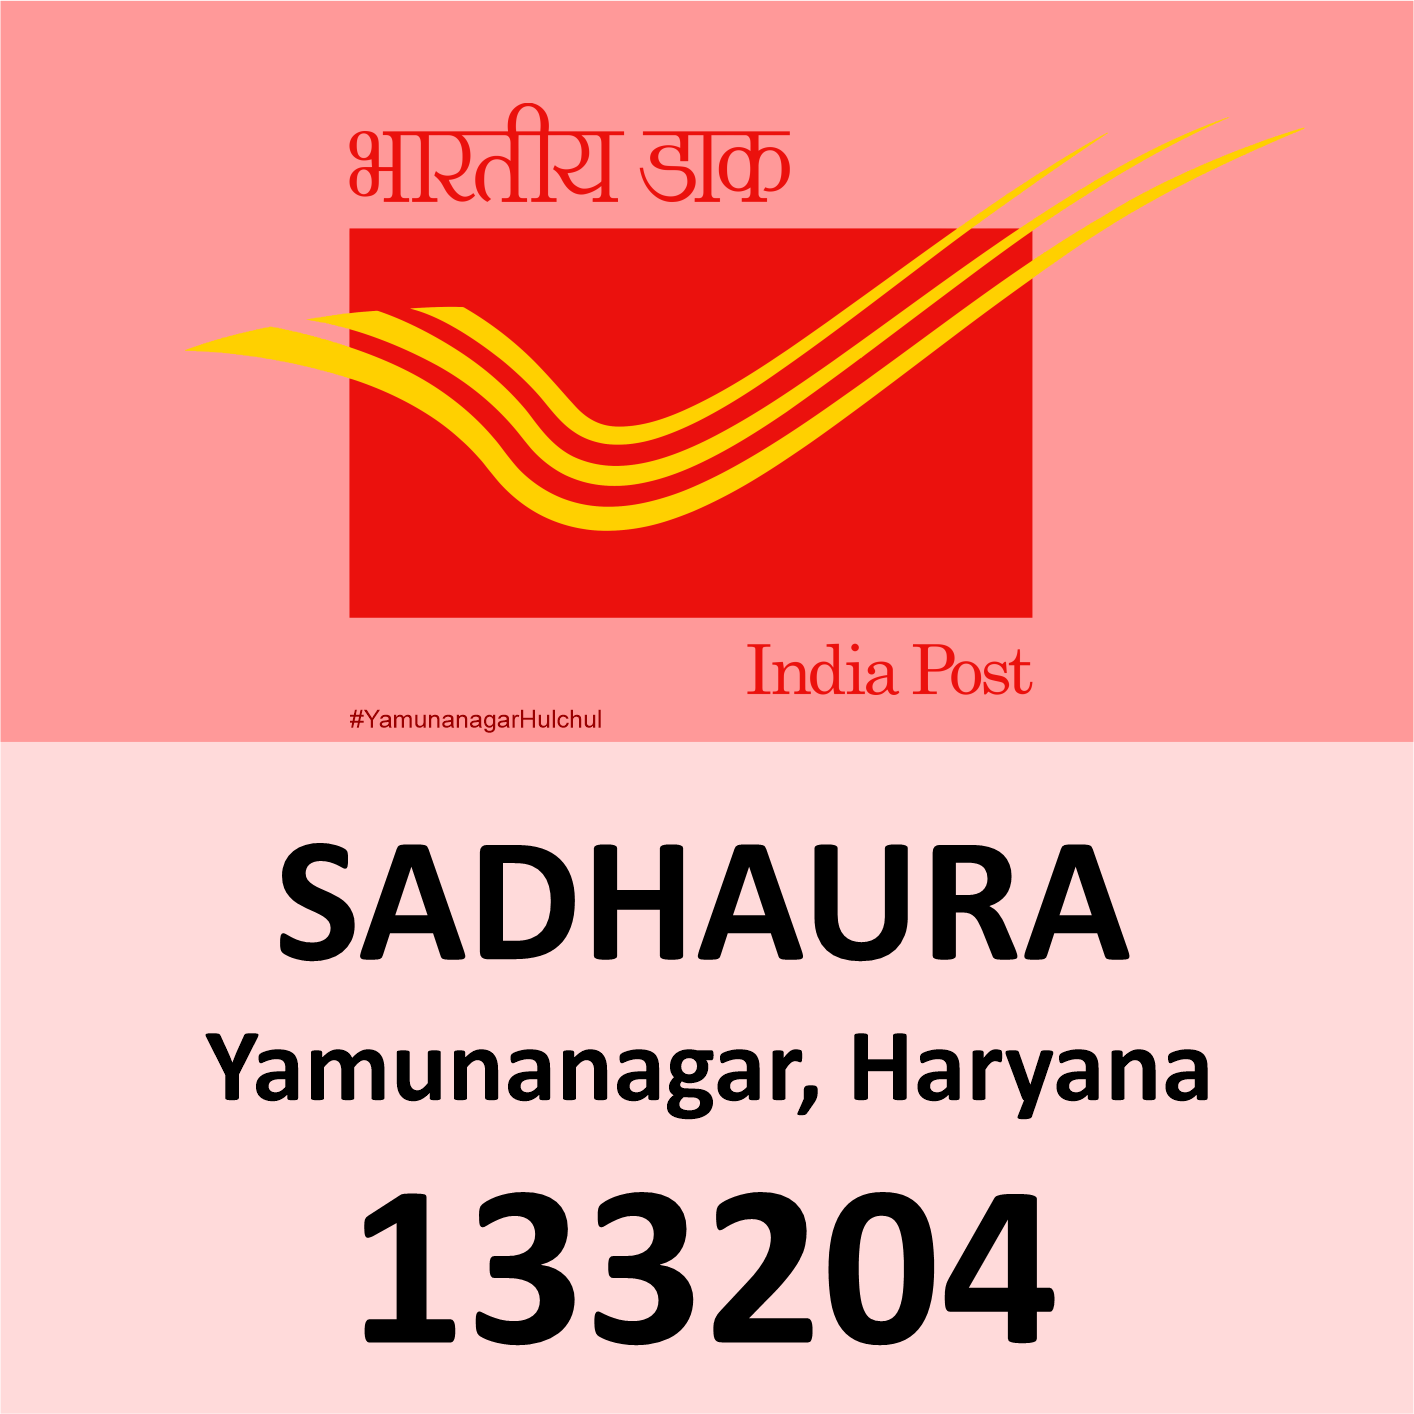 Pin Code of Sadhaura, Yamunanagar is 133204, #YamunanagarHulchul, #यमुनानगरहलचल, #PanditKhabri, Pandit Khabri, Pin Code of Yamunanagar, Haryana,